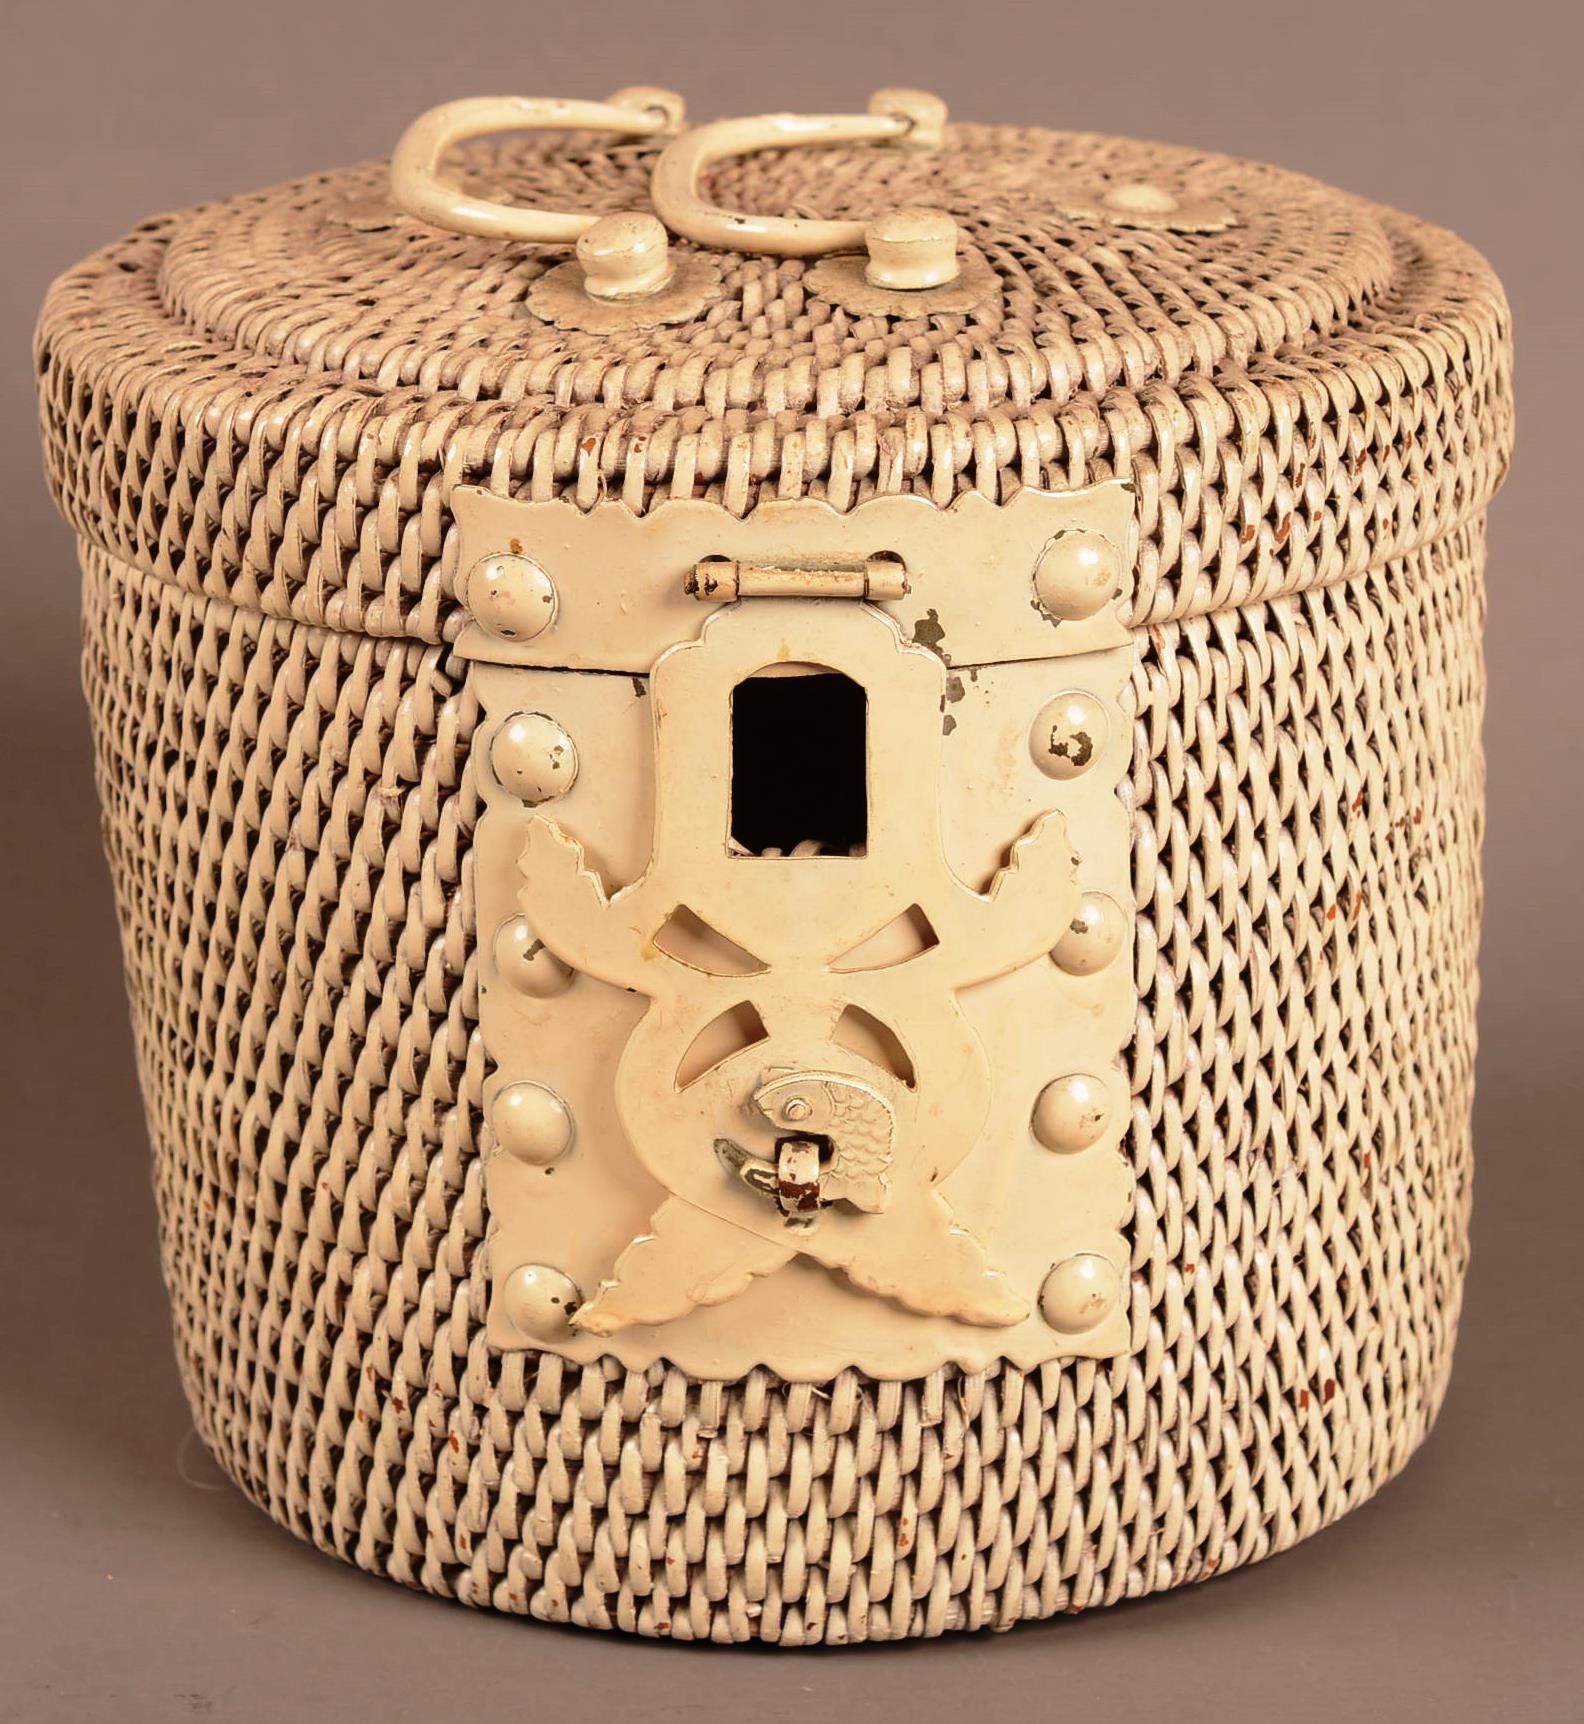 Théière en porcelaine ( petit éclat au bec ) 中国。

瓷质茶壶（壶嘴上有小缺口）

在它的盒子里画着急。